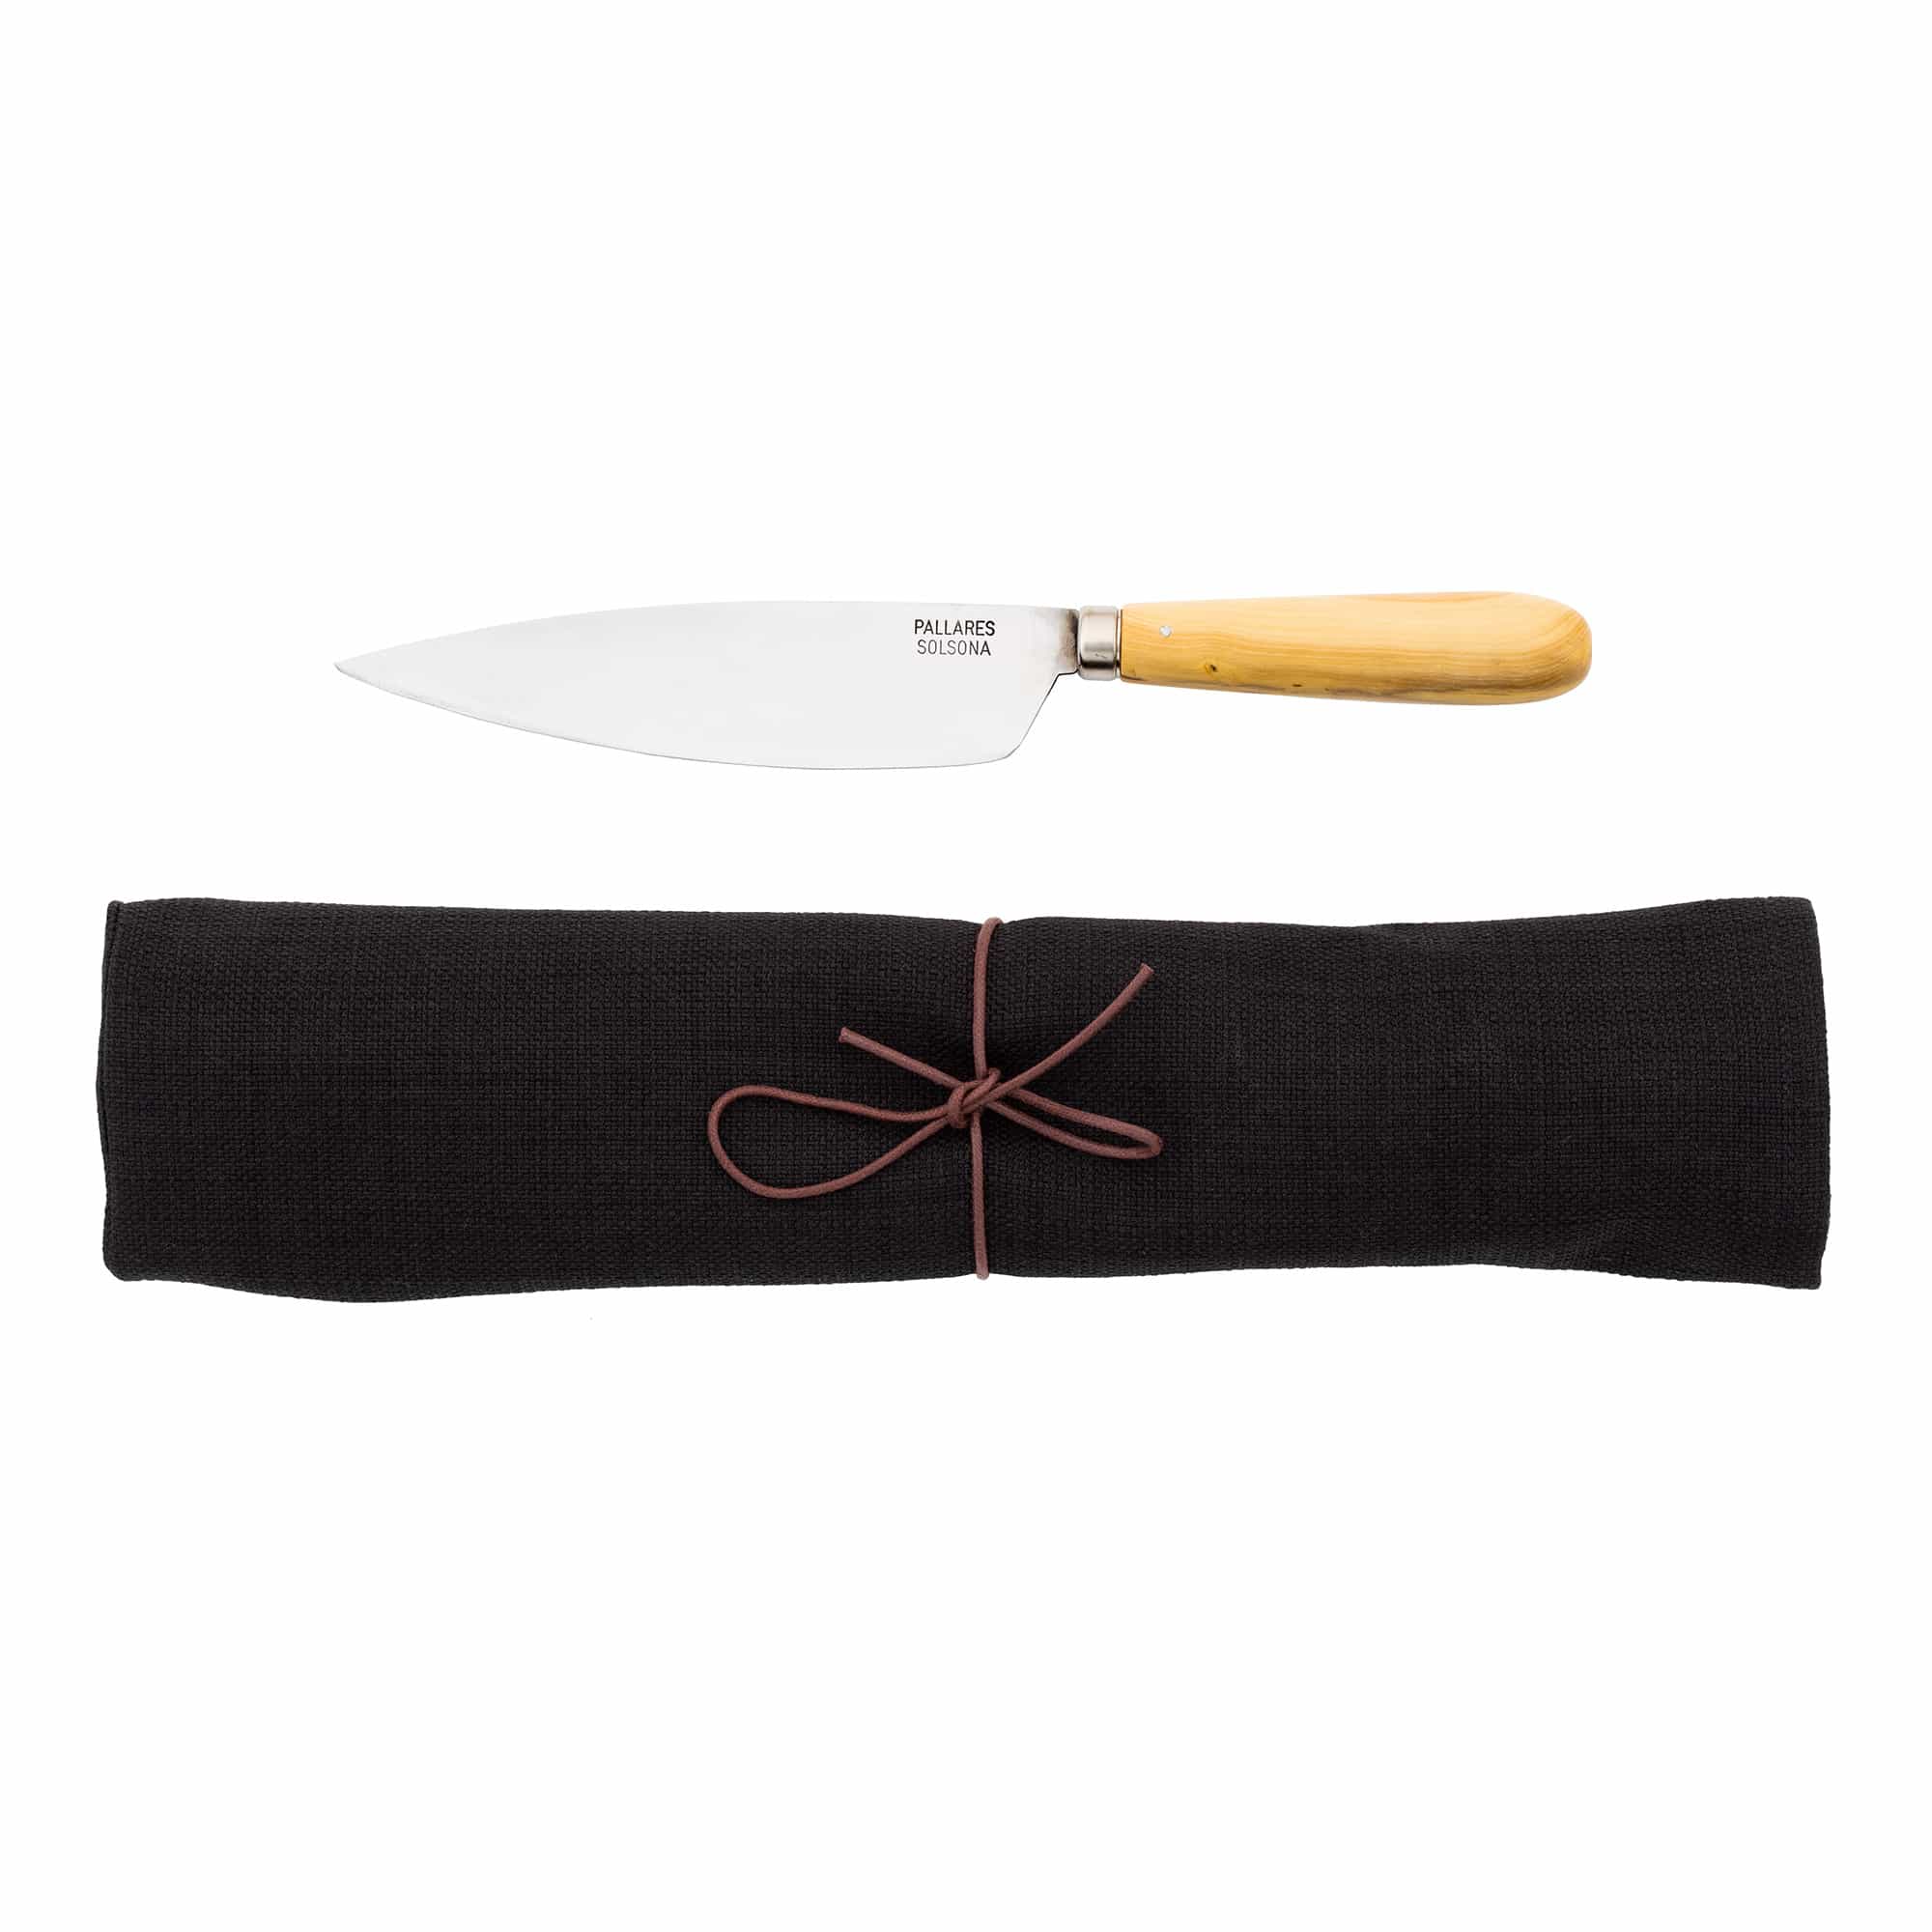 Tradisjonelle kjøkkenkniver i karbonstål / svart sett